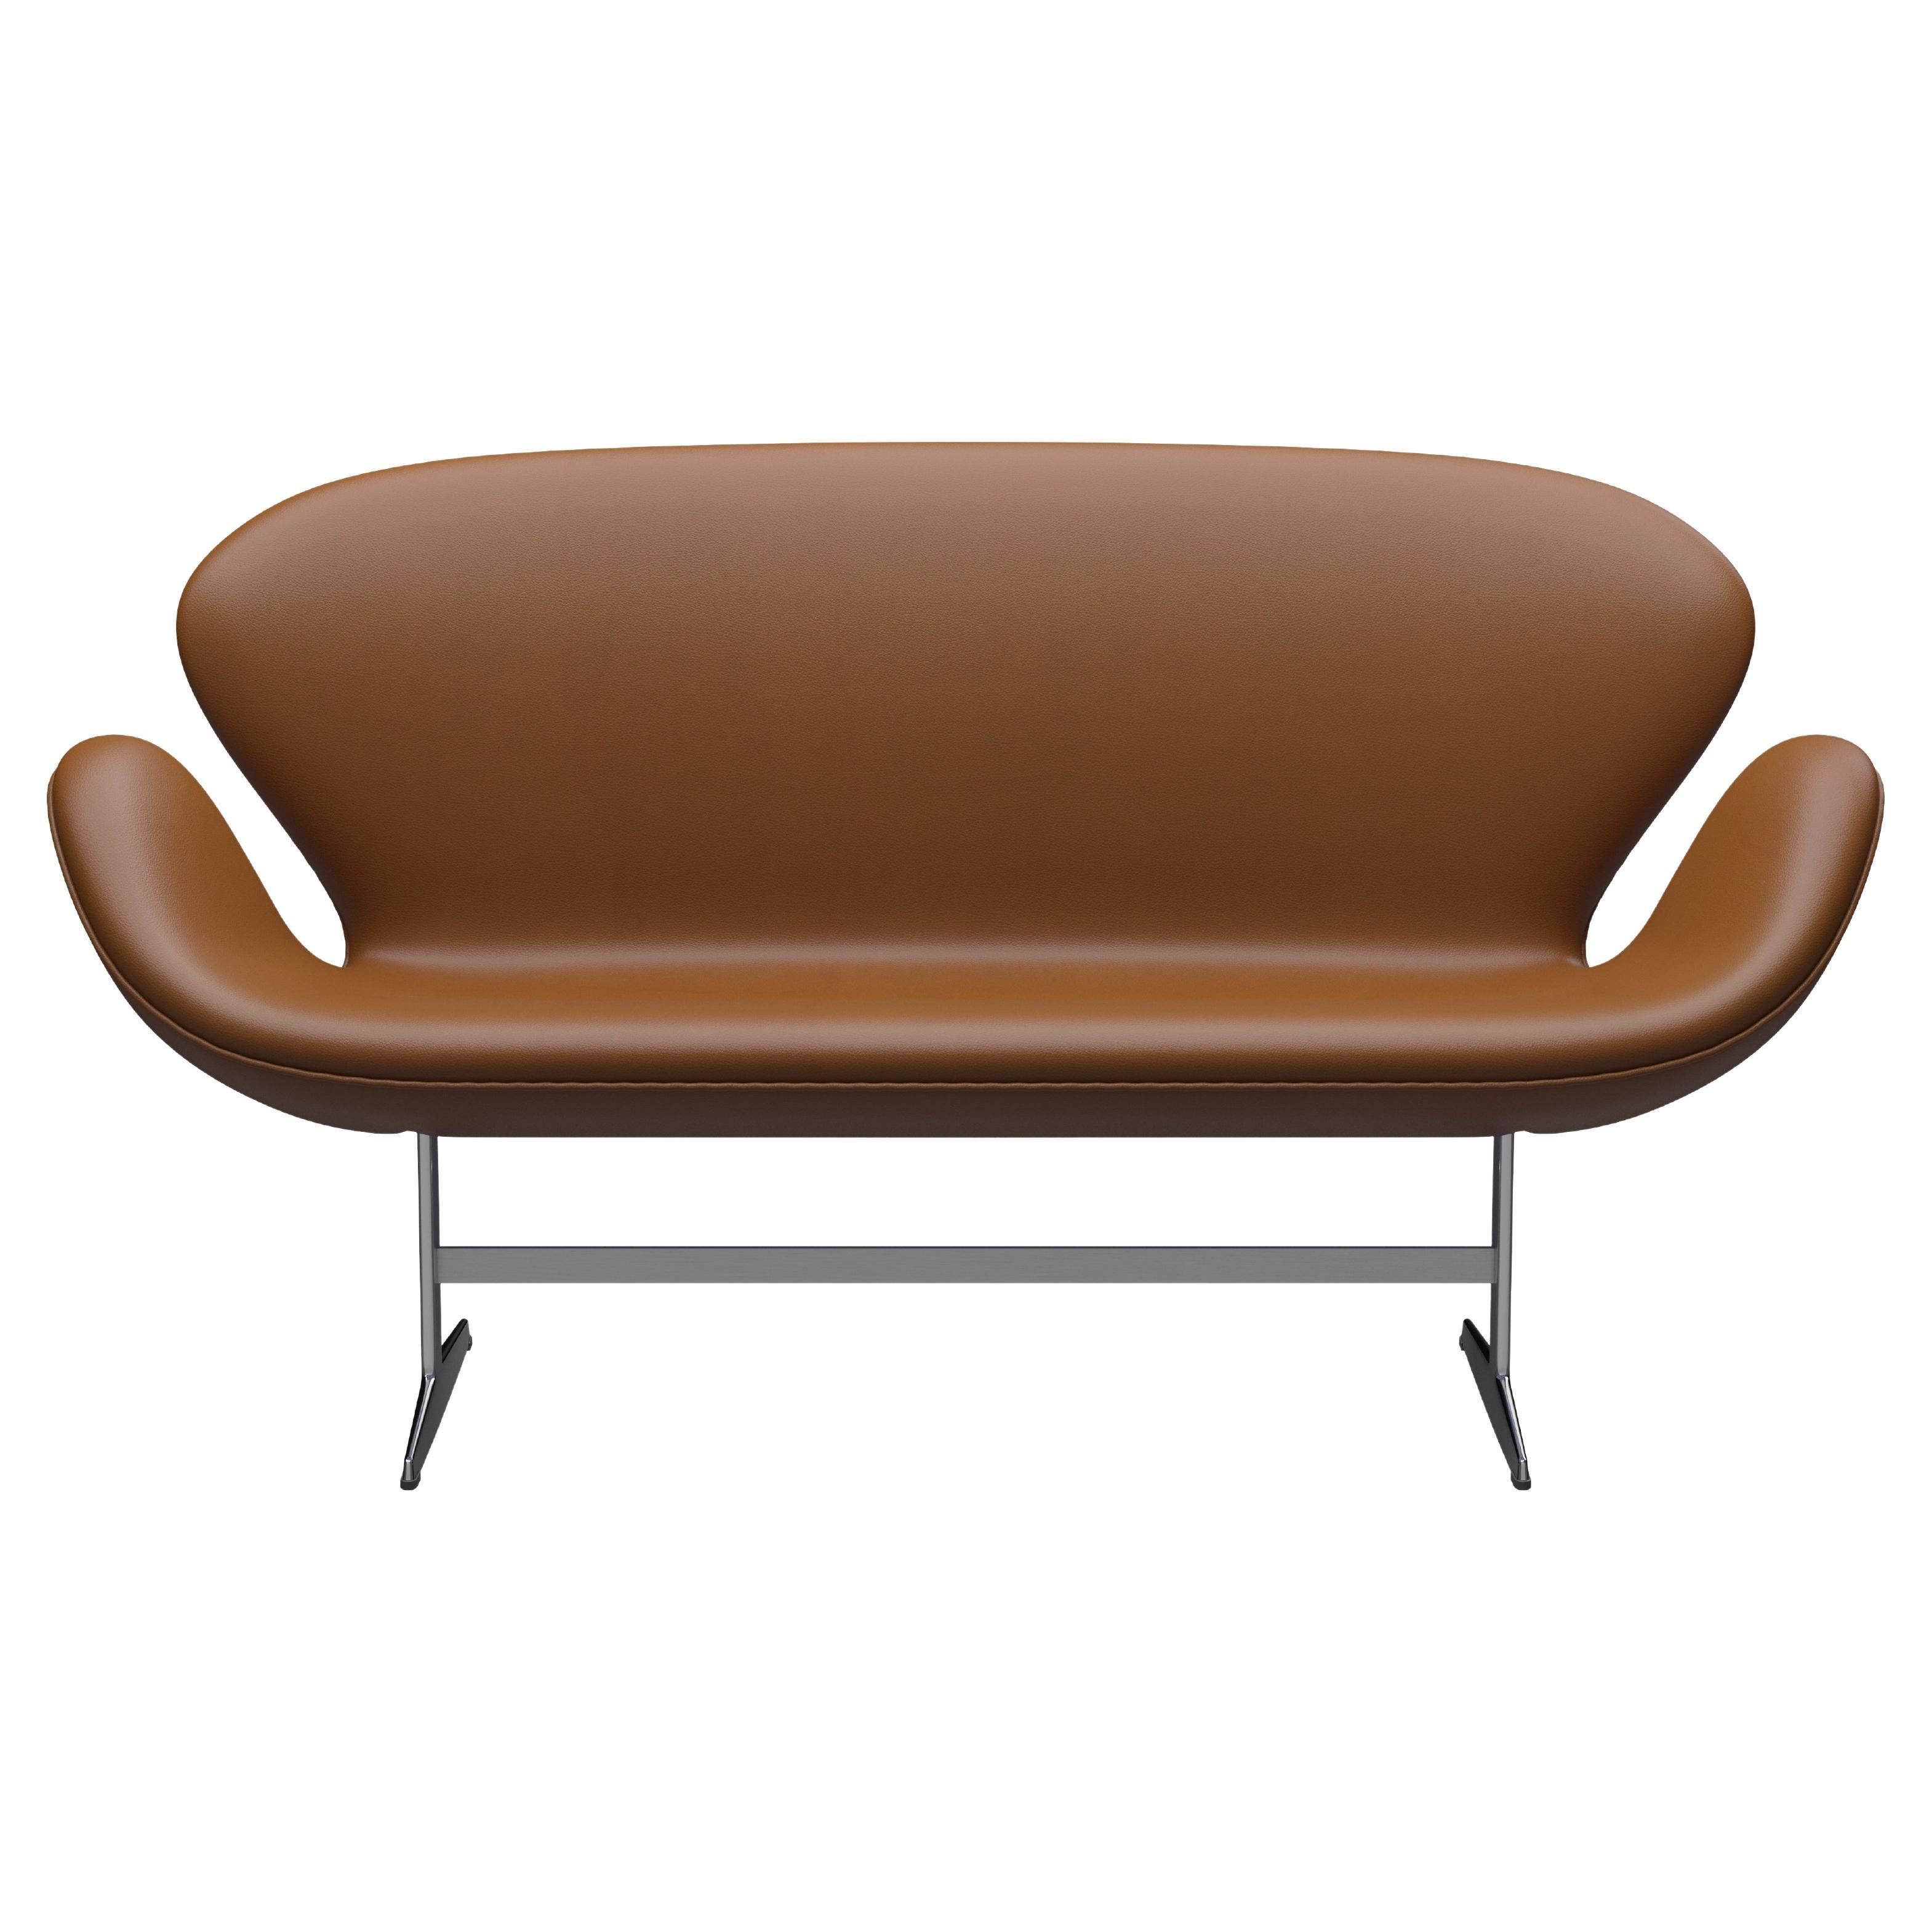 Arne Jacobsen 'Swan' Sofa for Fritz Hansen in Leather Upholstery (Cat. 4) For Sale